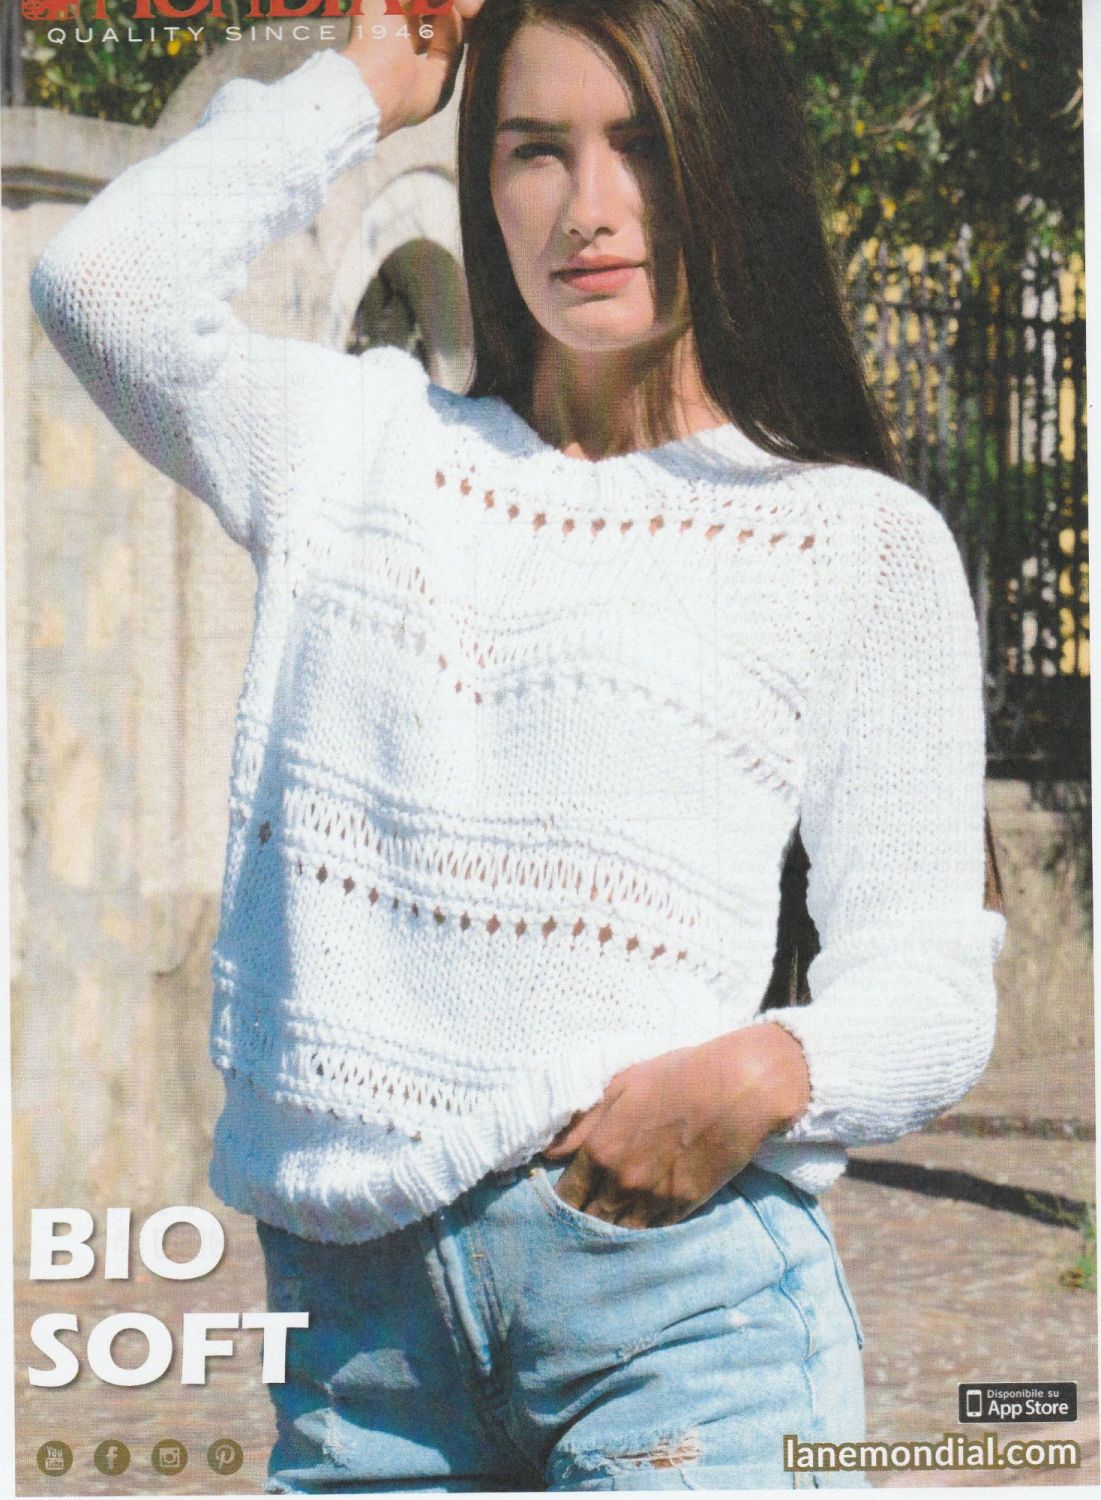 Bio Soft Sweater Knitting Pattern